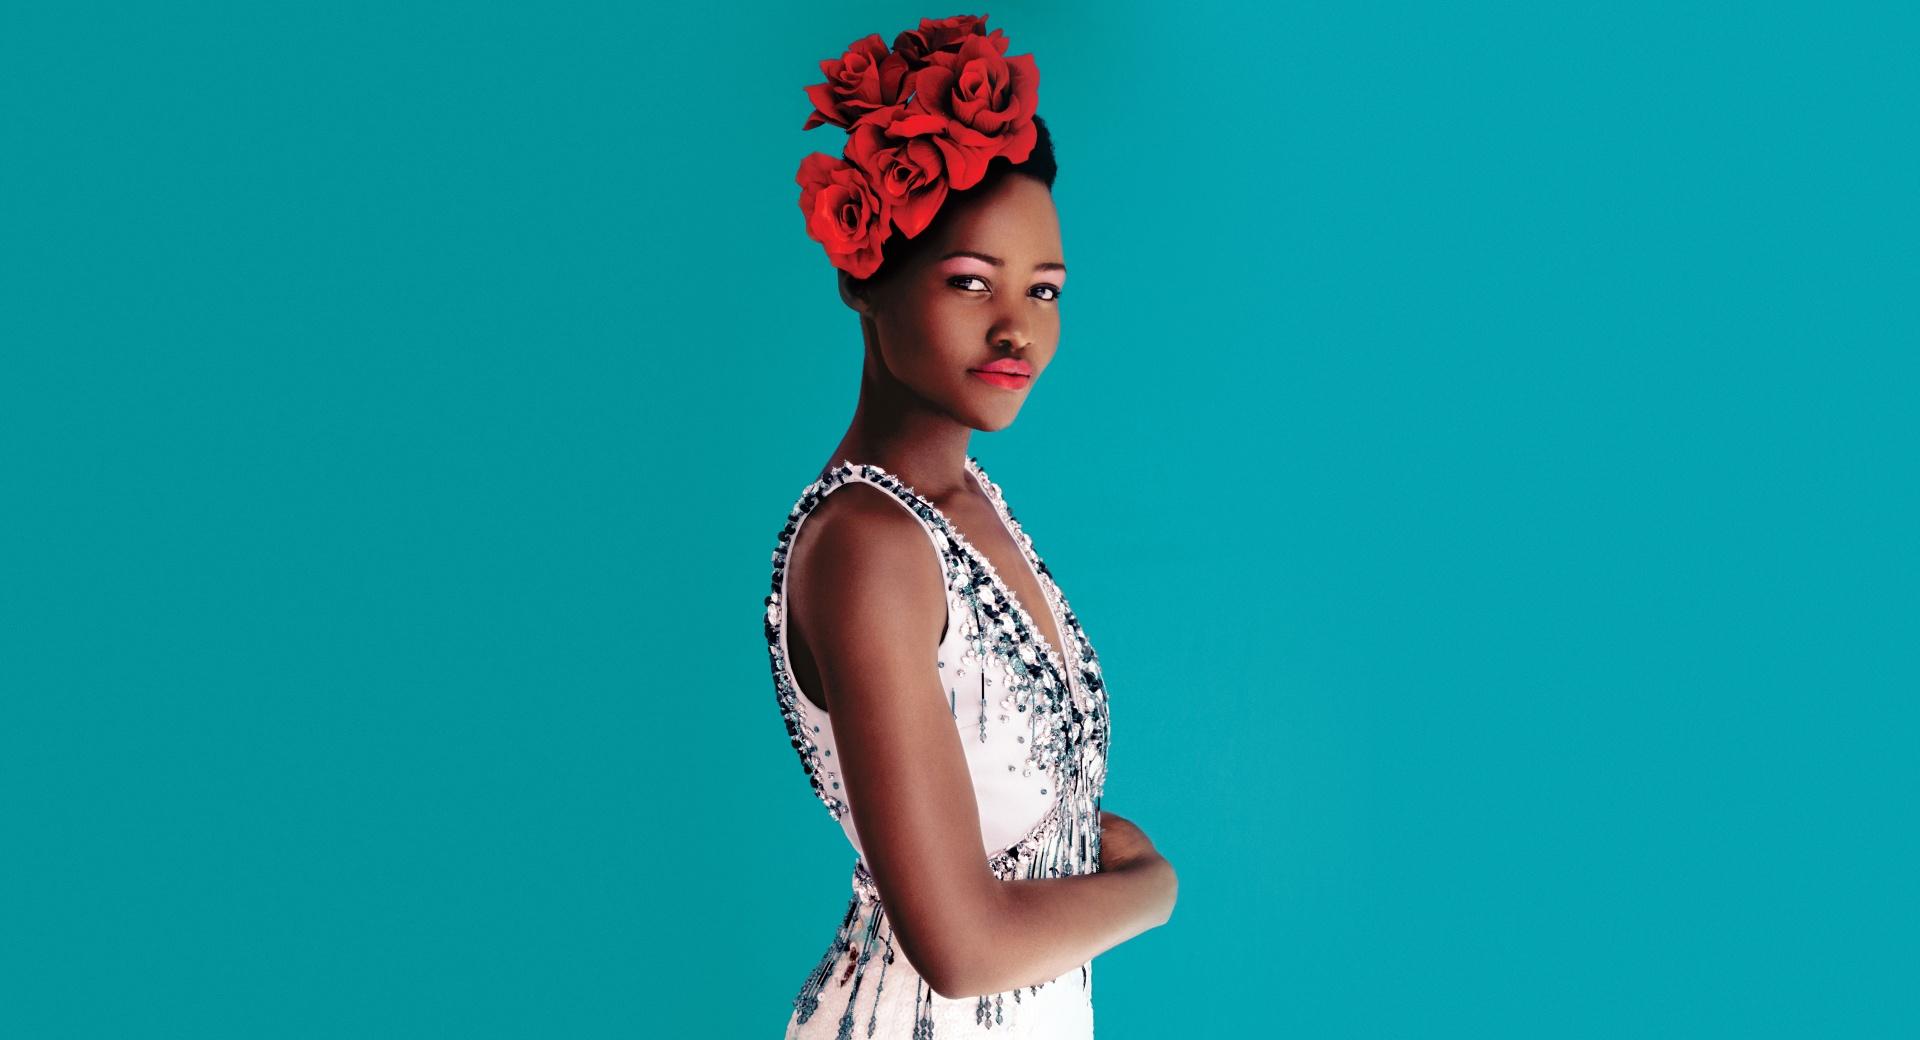 Lupita Nyongo Dress at 1600 x 1200 size wallpapers HD quality